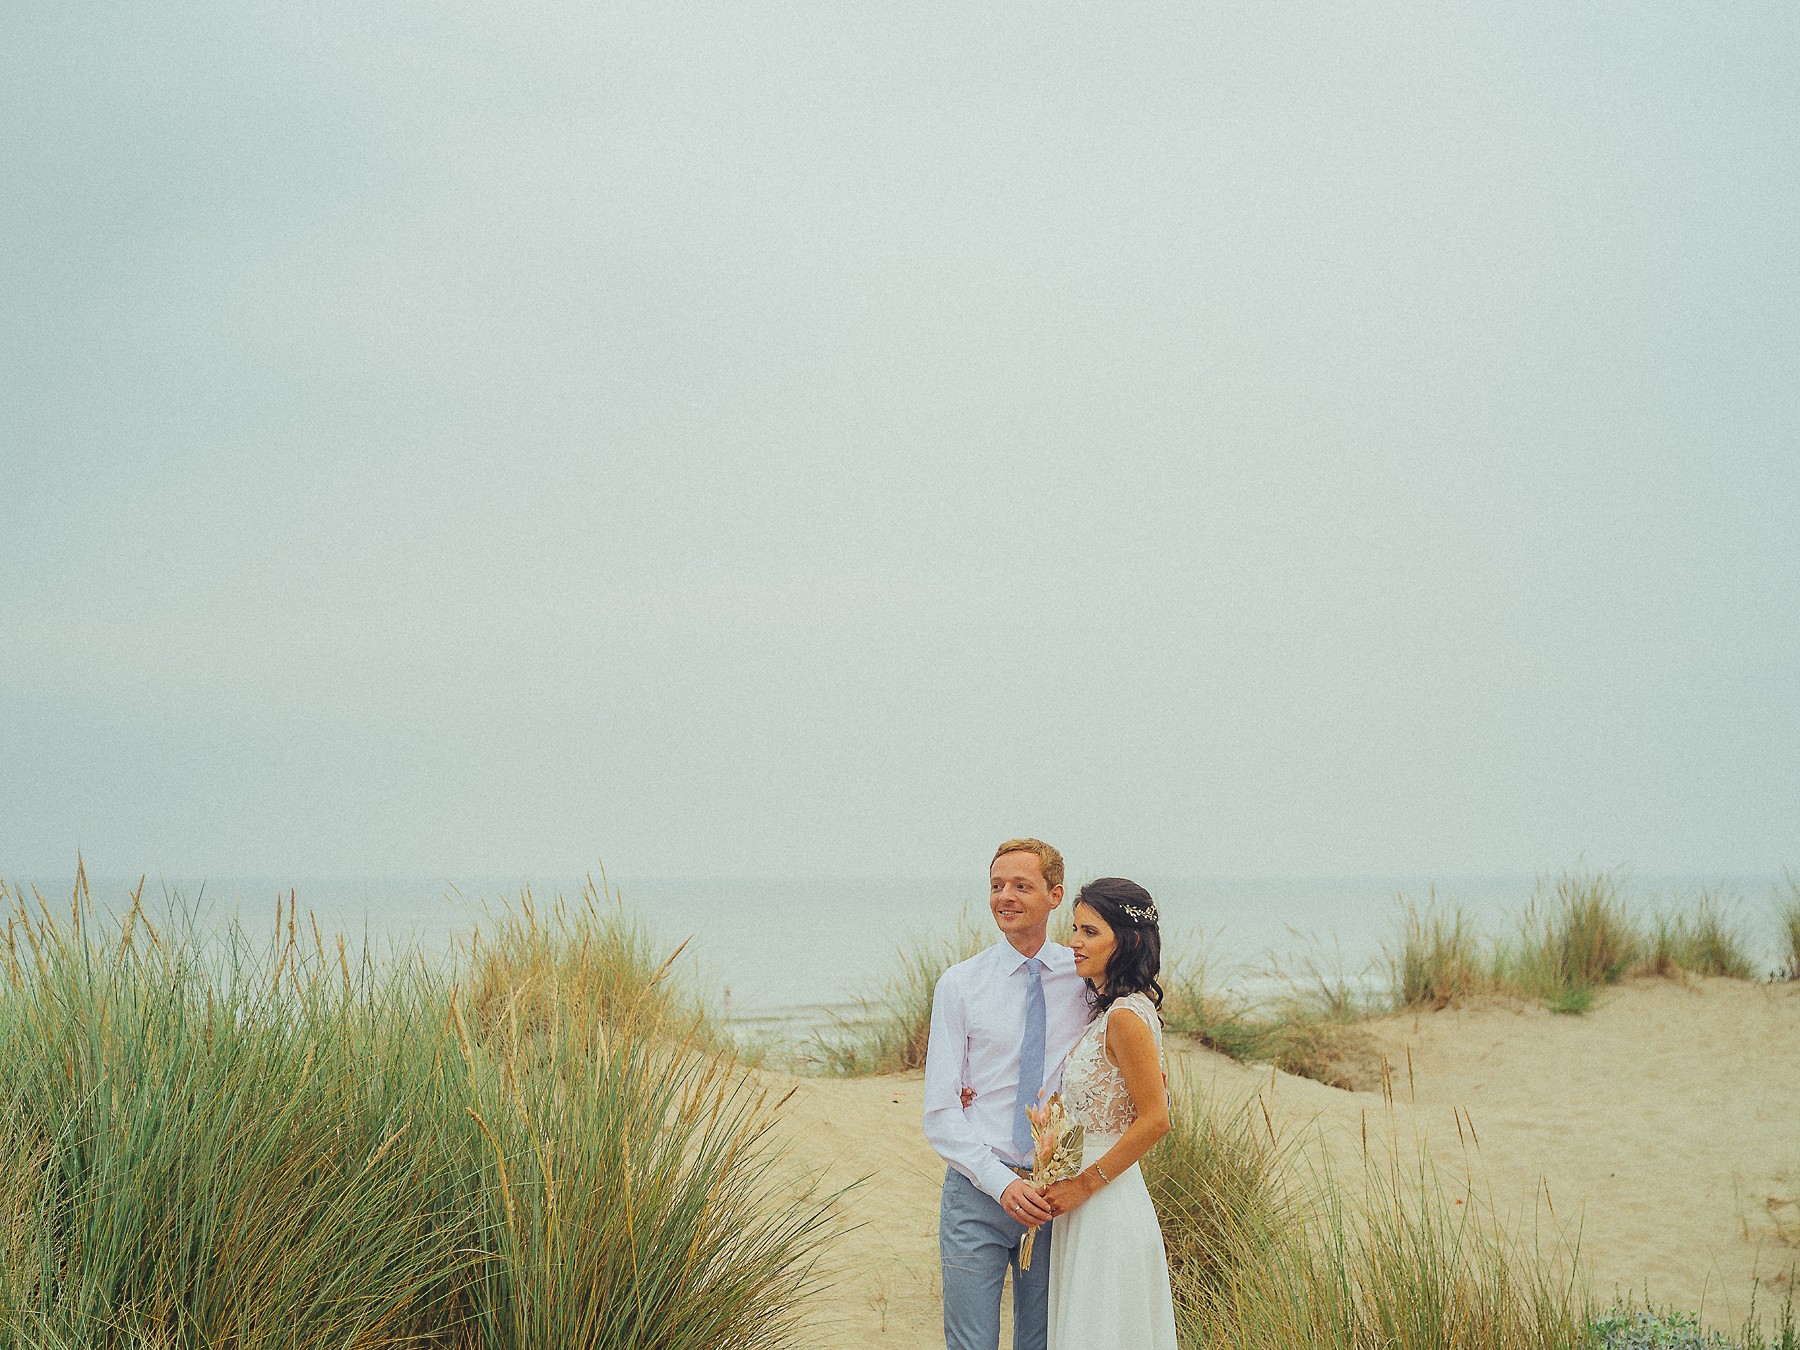 Verhalende trouwfotografie op het strand